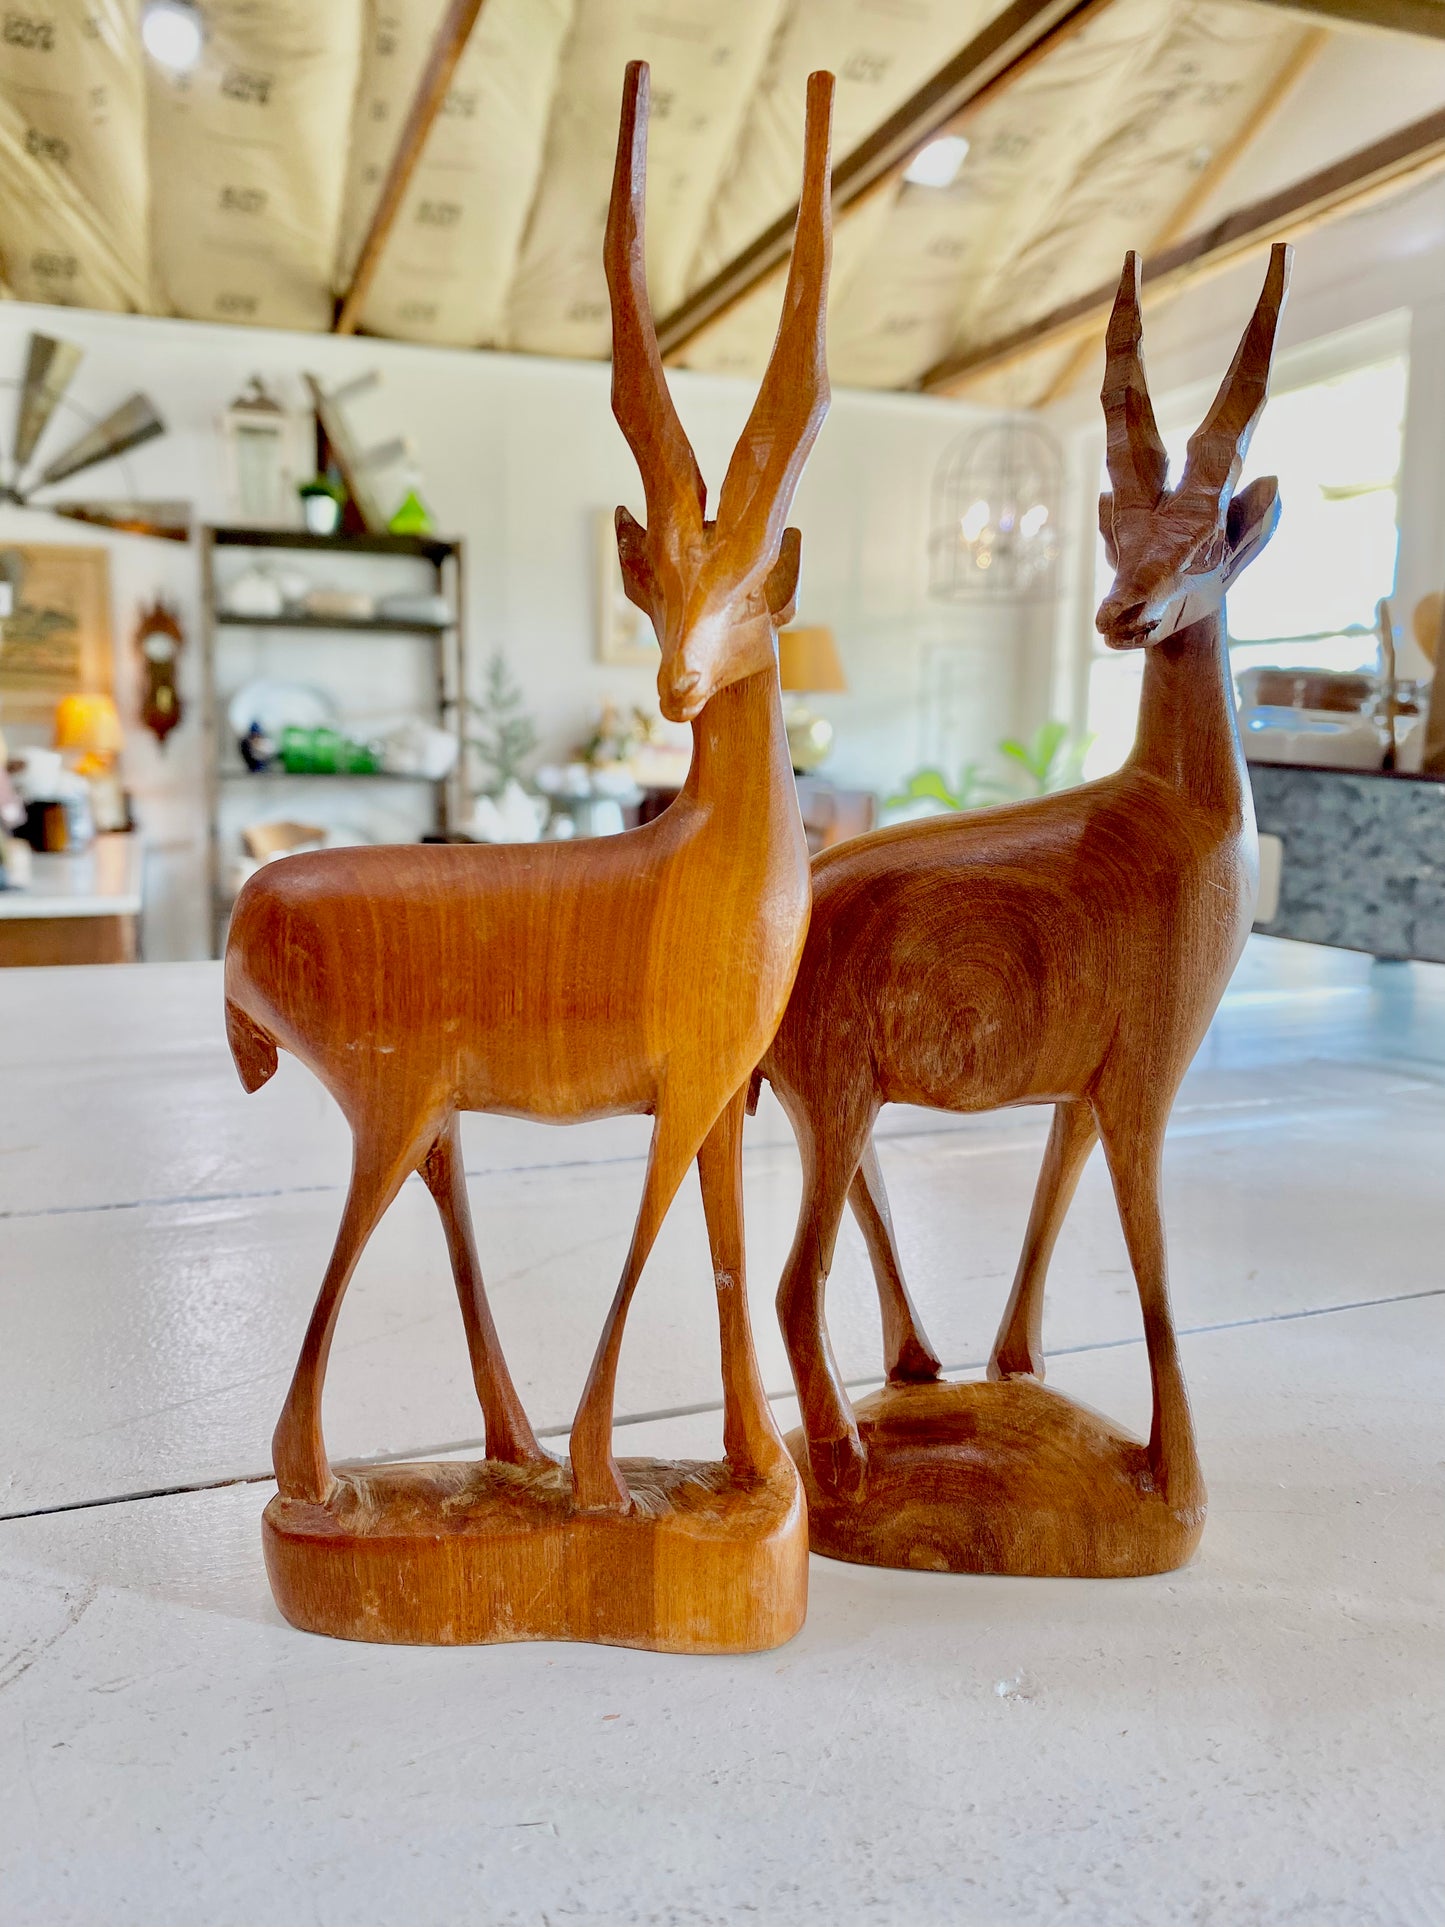 Pair of wood carved deer